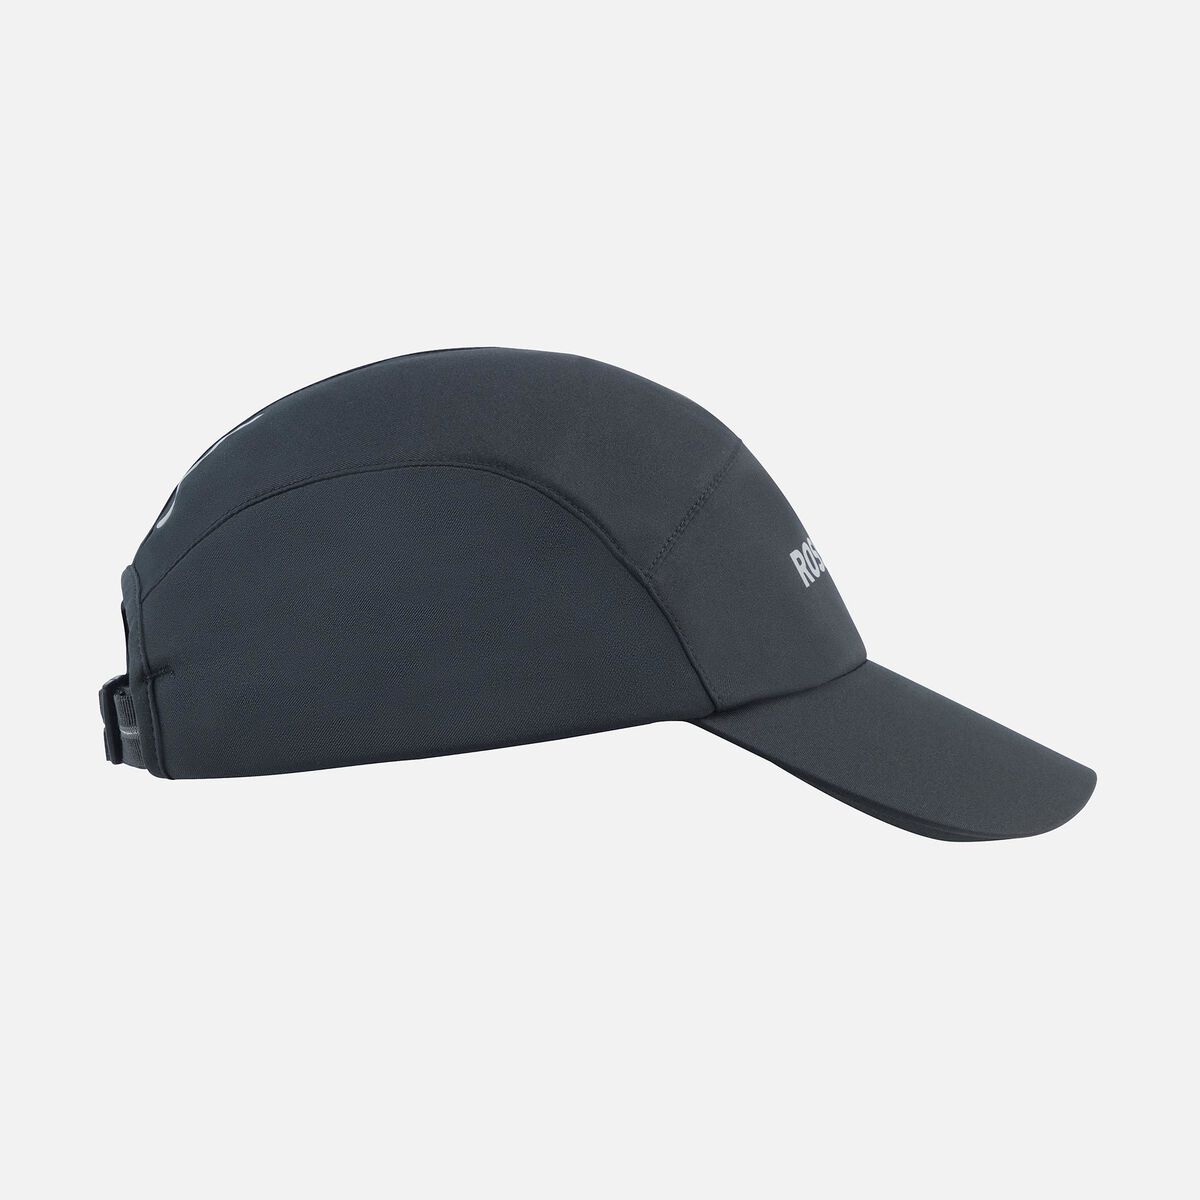 Rossignol Unisex Active cap black | Caps Unisex | Rossignol